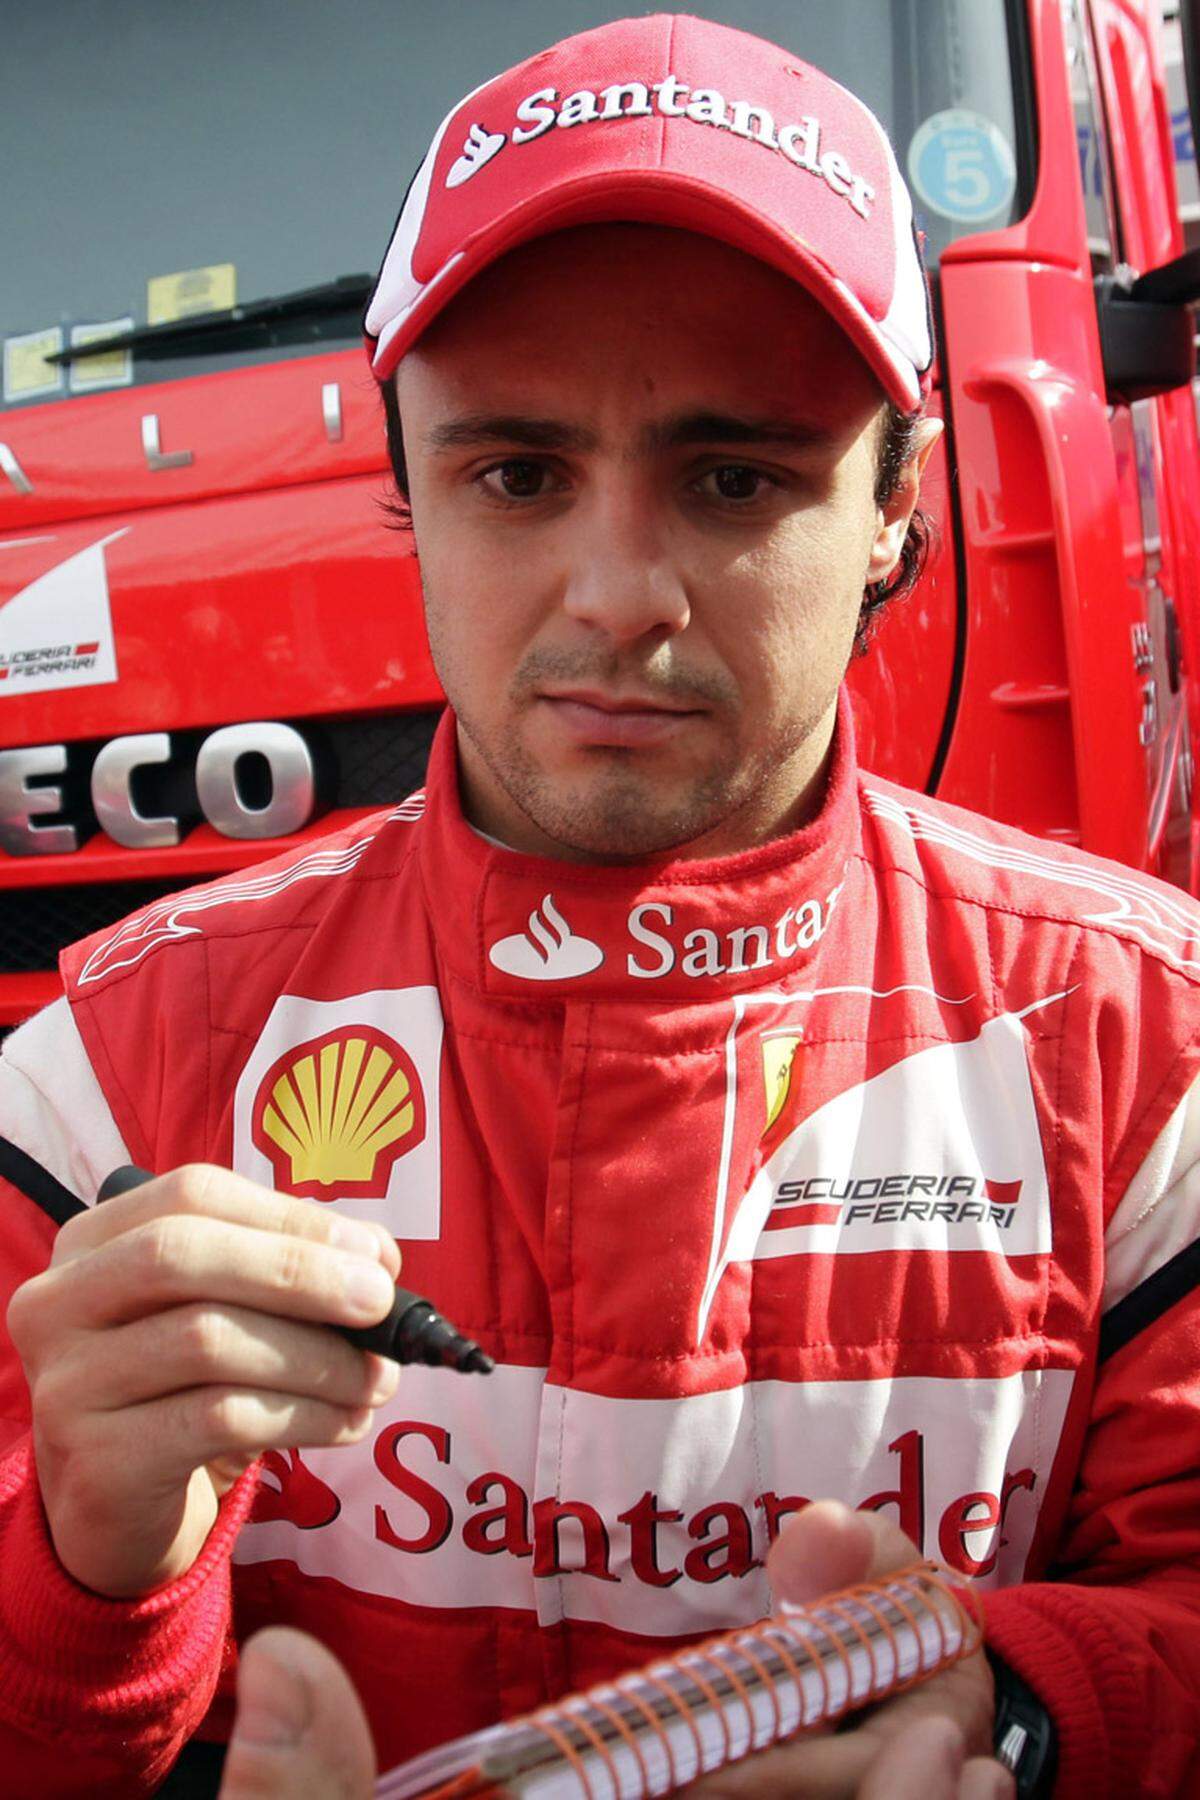 Felipe Massa (BRA)  Geboren: 25. April 1981 in Sao Paulo  Erster Grand Prix: 3. März 2002 Australien  Erster GP-Sieg: 27. August 2006 Türkei  GP-Starts: 134  GP-Siege: 11  Bisherige Teams: Sauber (2002, 2004-2005)  Größter Erfolg: WM-Zweiter 2008